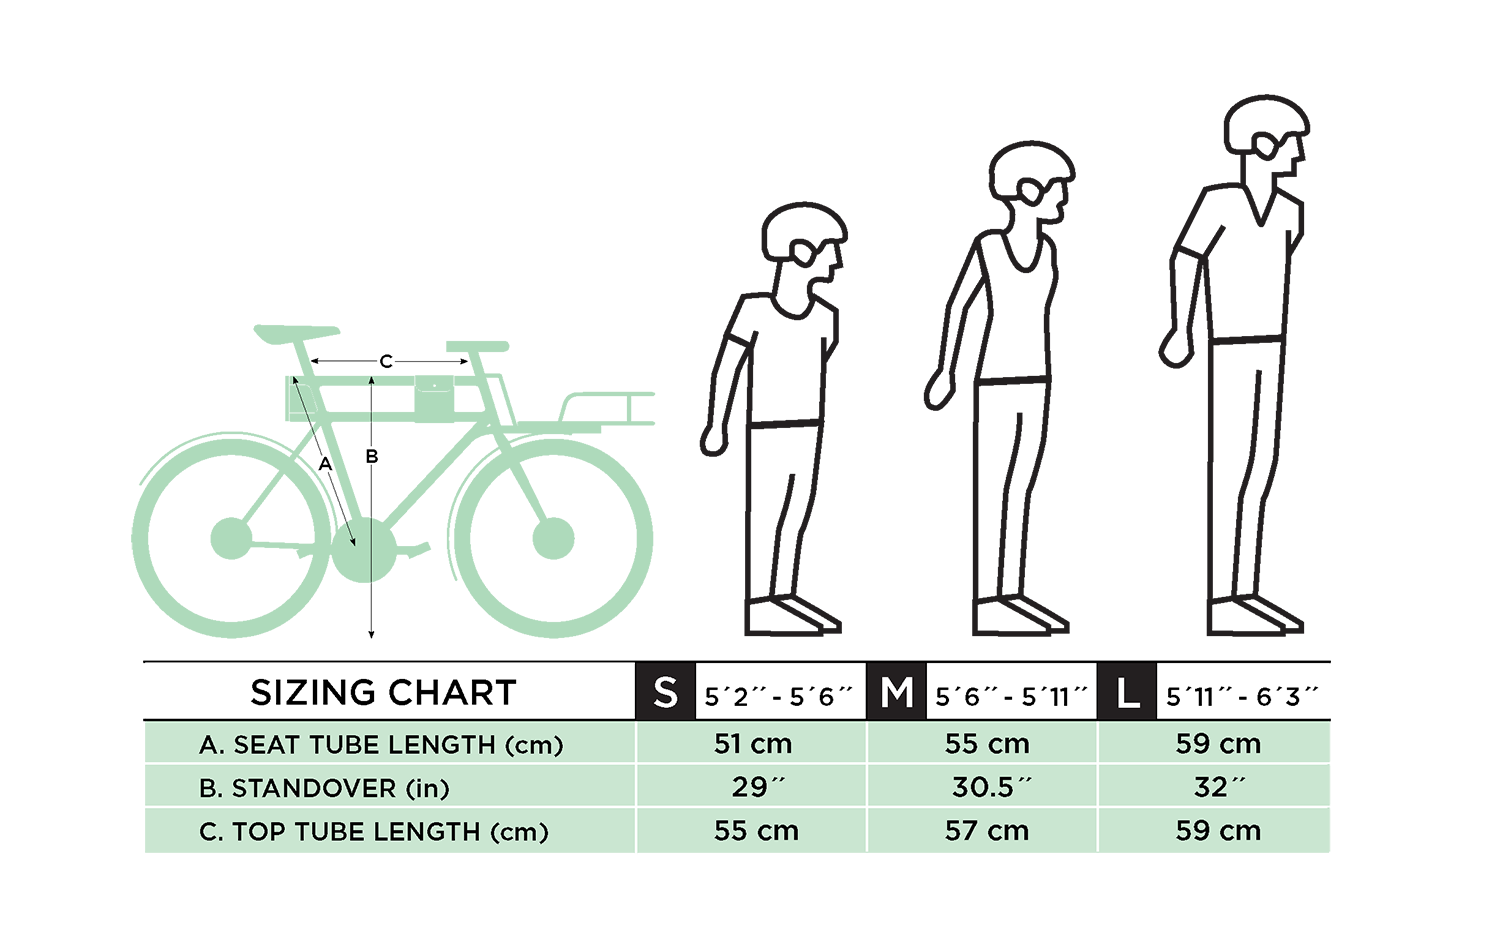 Ростовка рамы велосипеда по росту таблица. Размер горного велосипеда по росту таблица для женщин. Размер рамы велосипеда по росту таблица для детей. Рамы велосипедов по росту таблица.